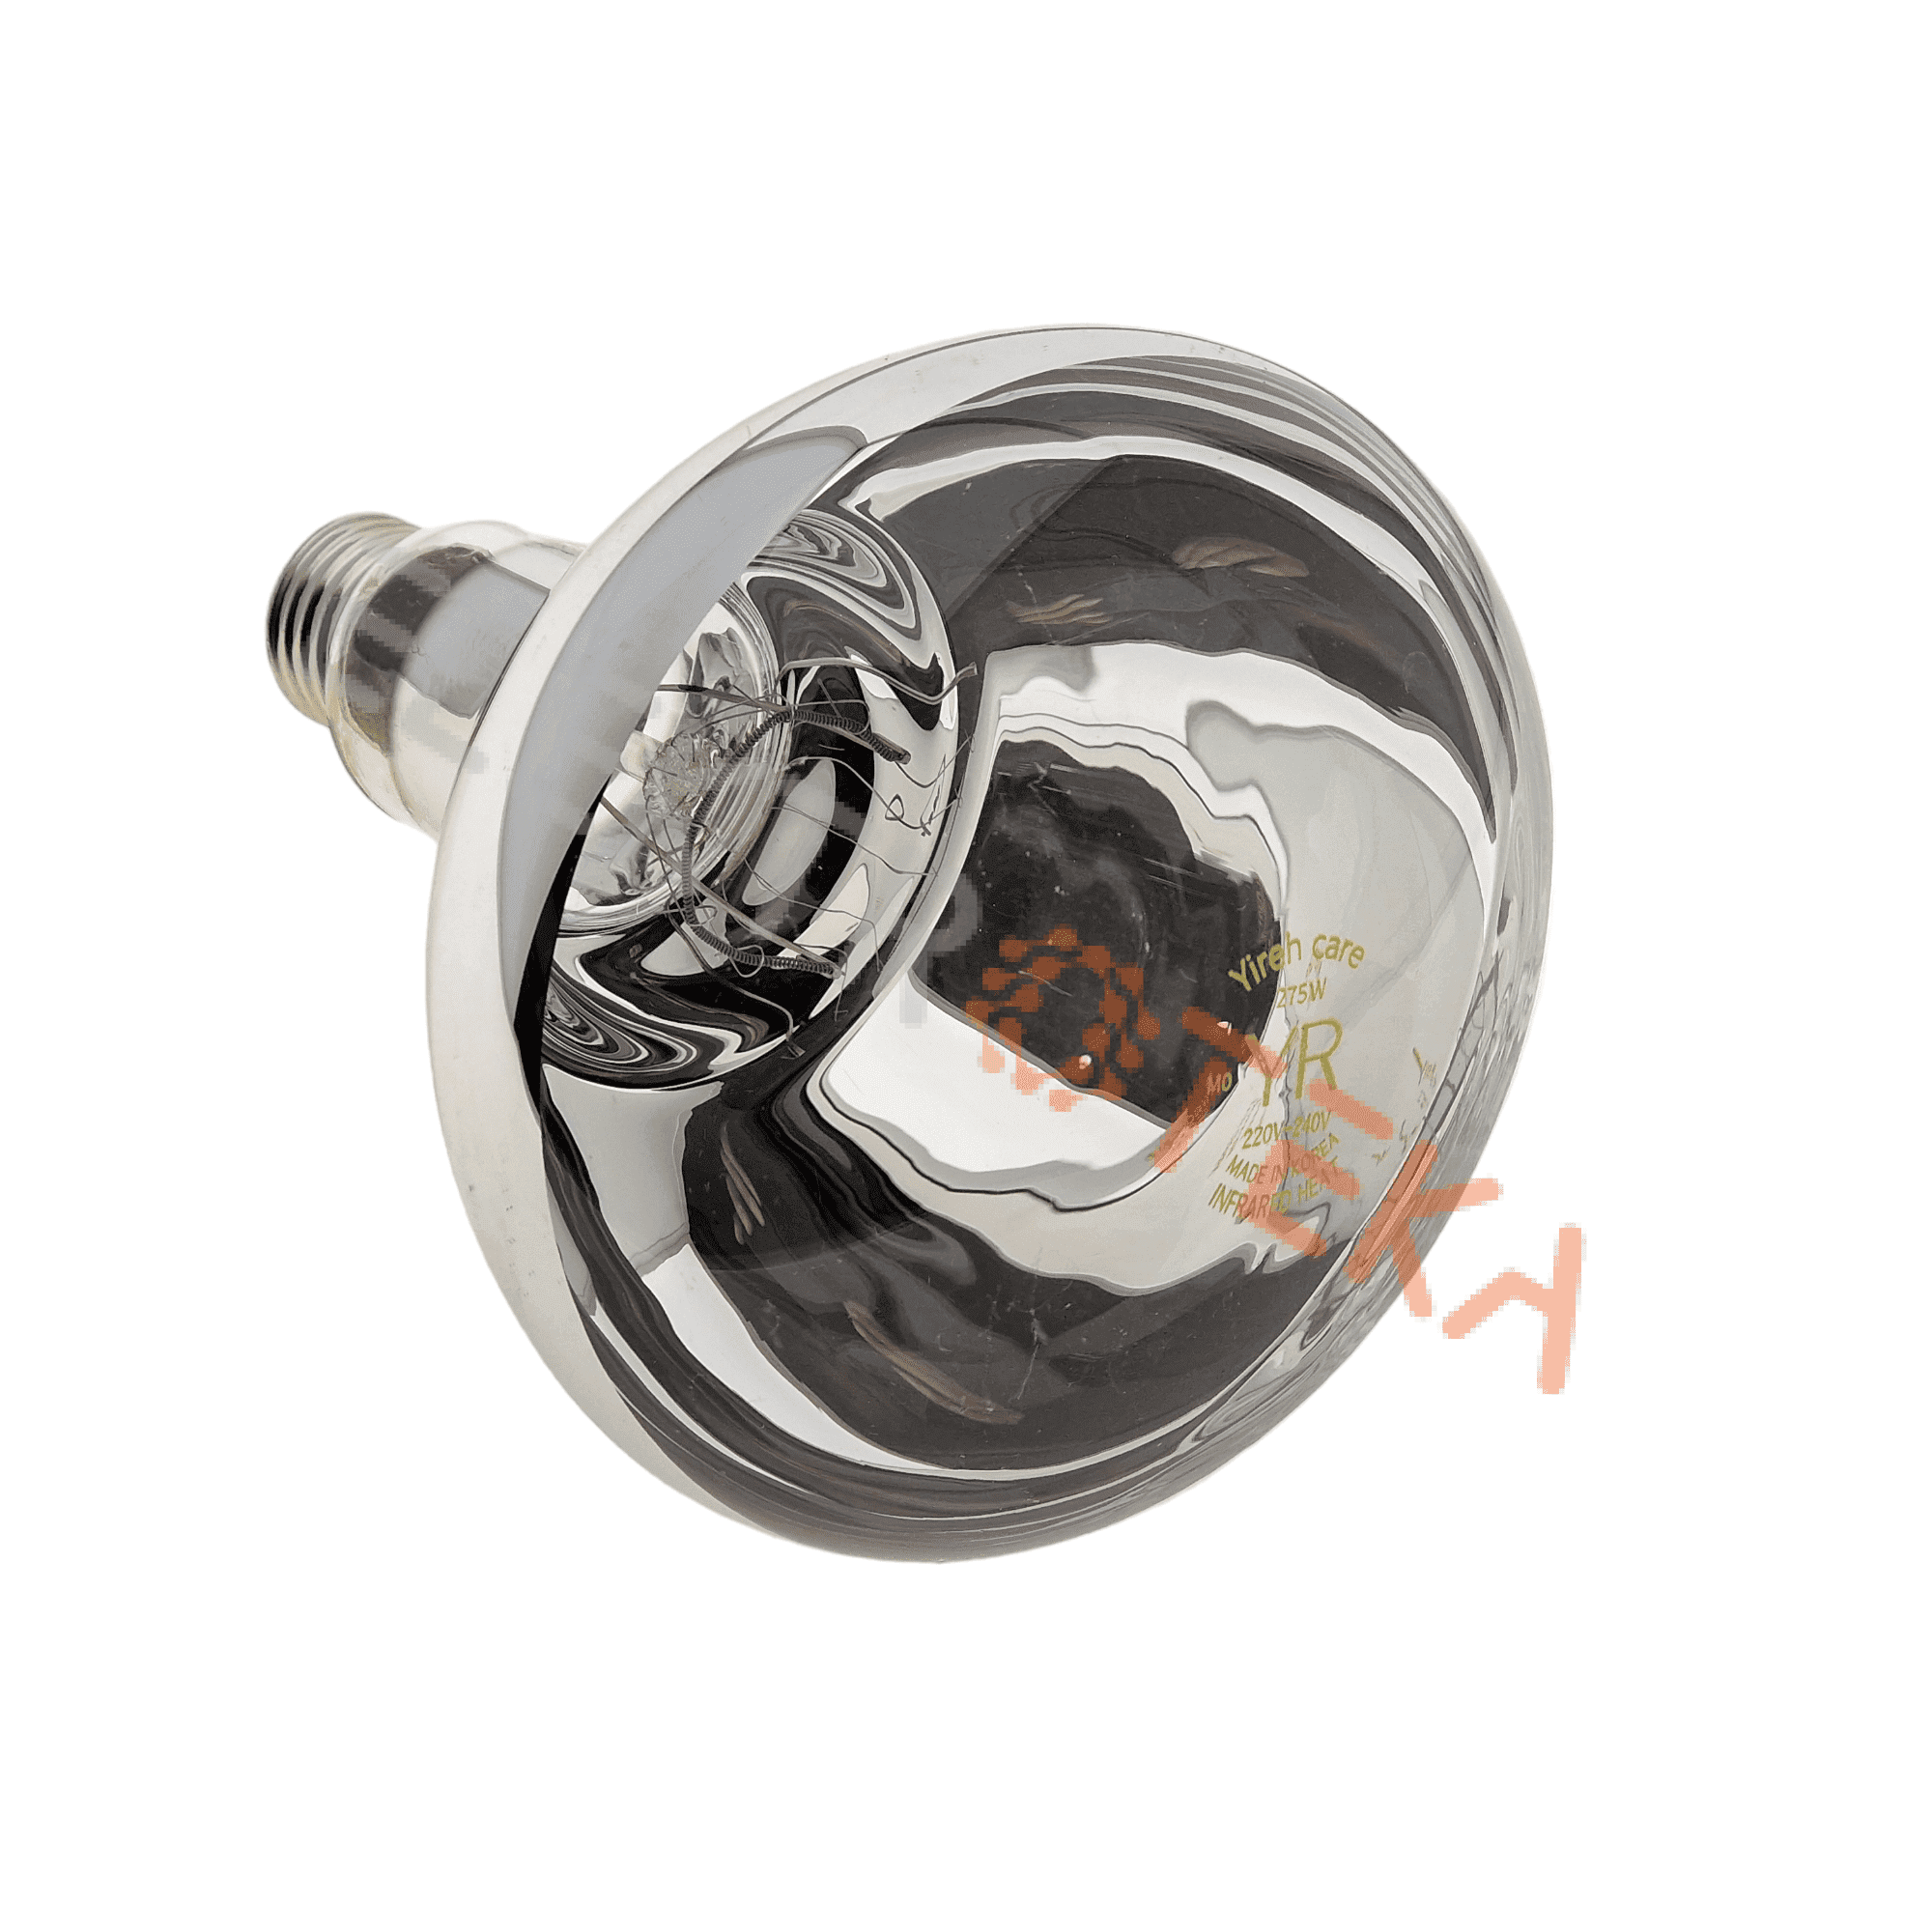 Infraraudonųjų spindulių šildymo lempa R125 275W 230V ilgis 175mm plotis 125mm lizdas E27